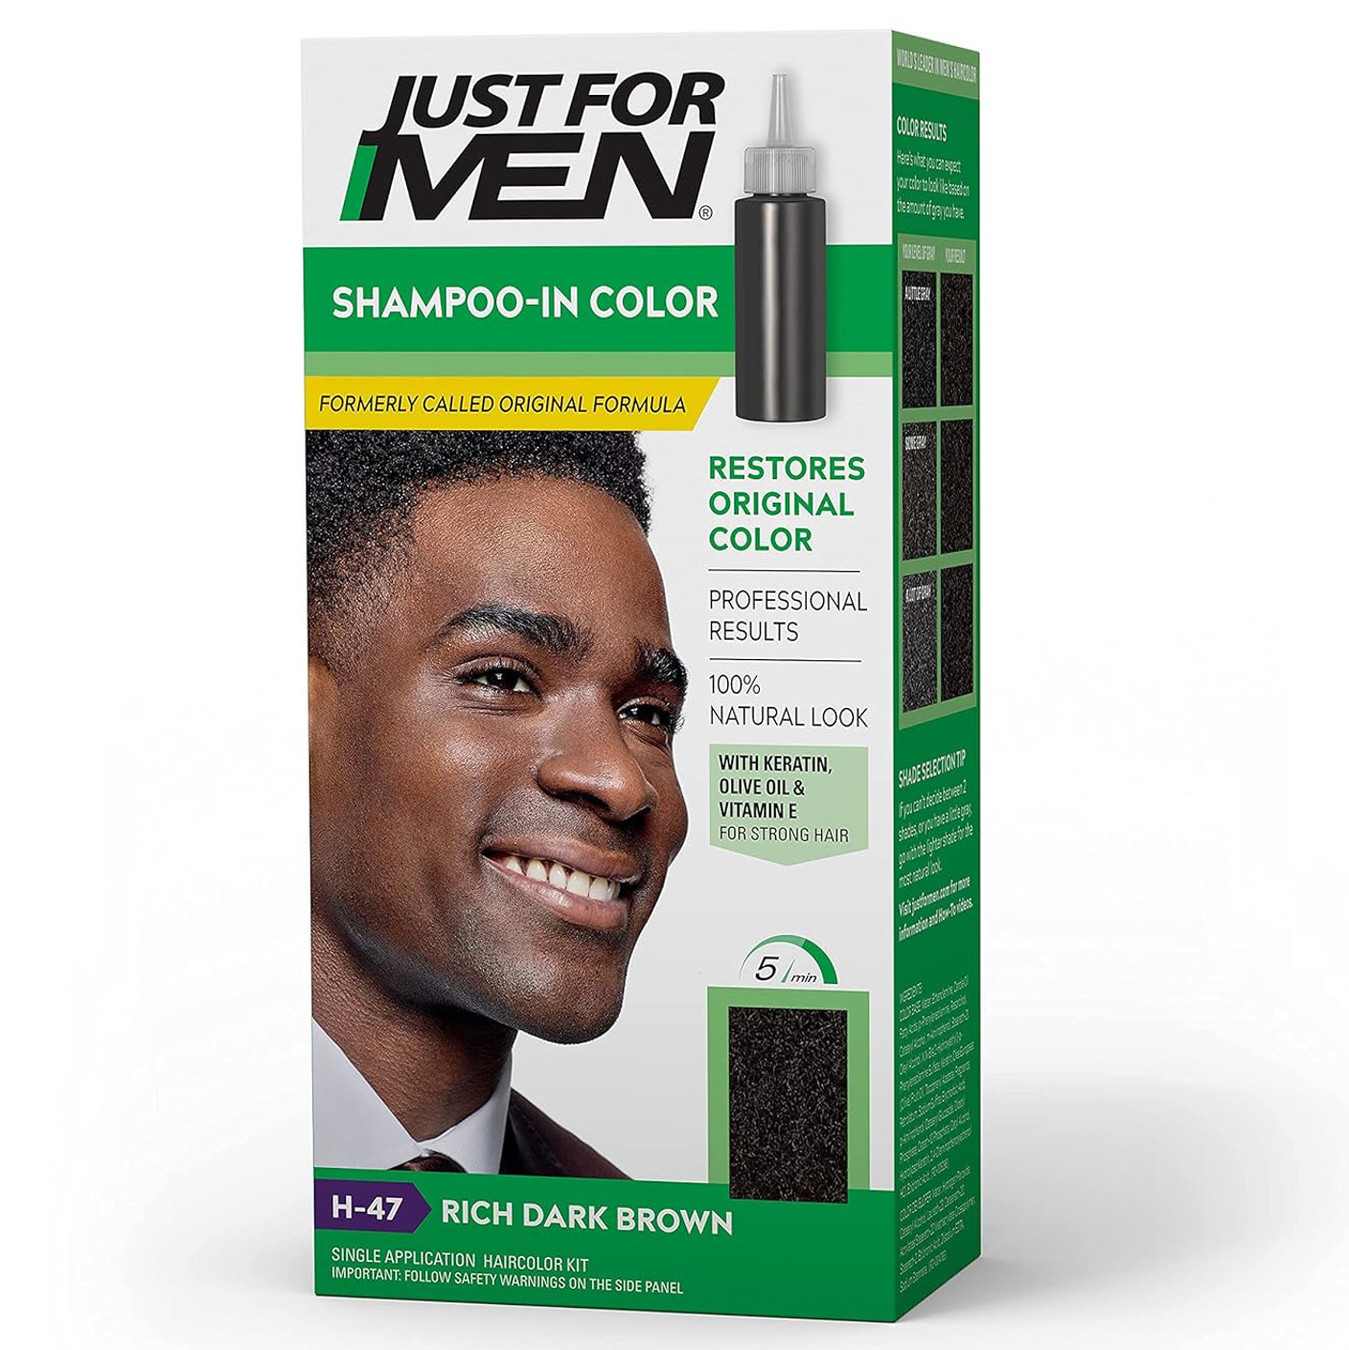 Just For Men Shampoo-In Color (Formerly Original Formula)